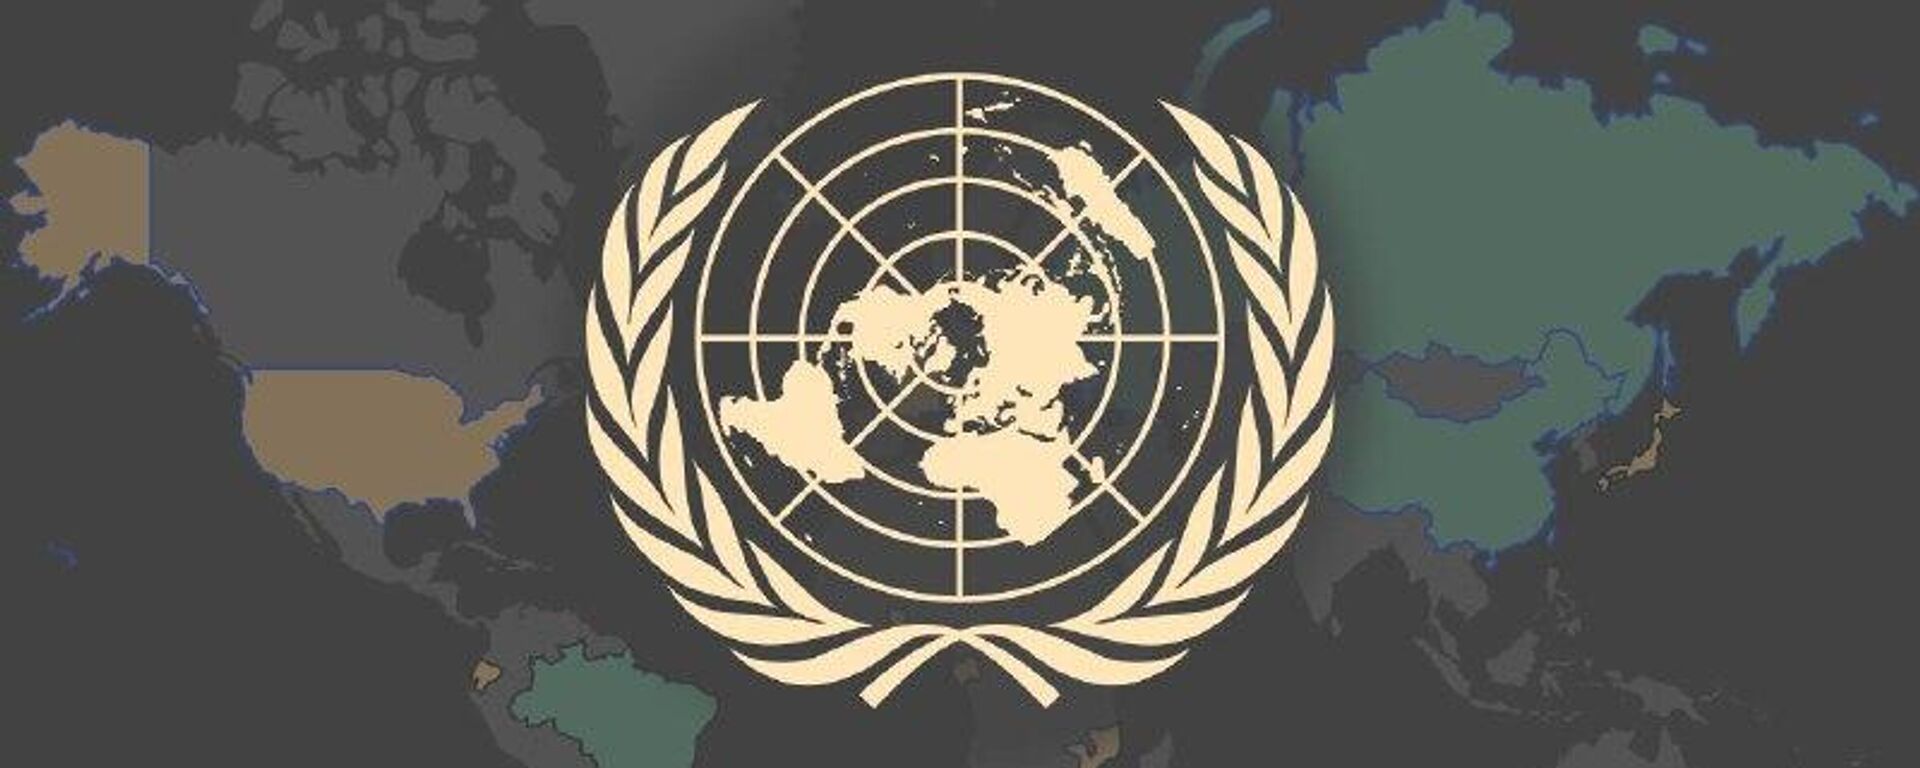 شورای امنیت سازمان ملل، قطعنامه روسیه در مورد بررسی خرابکاری در نورد استریم را تصویب نکرد - اسپوتنیک ایران  , 1920, 28.03.2023